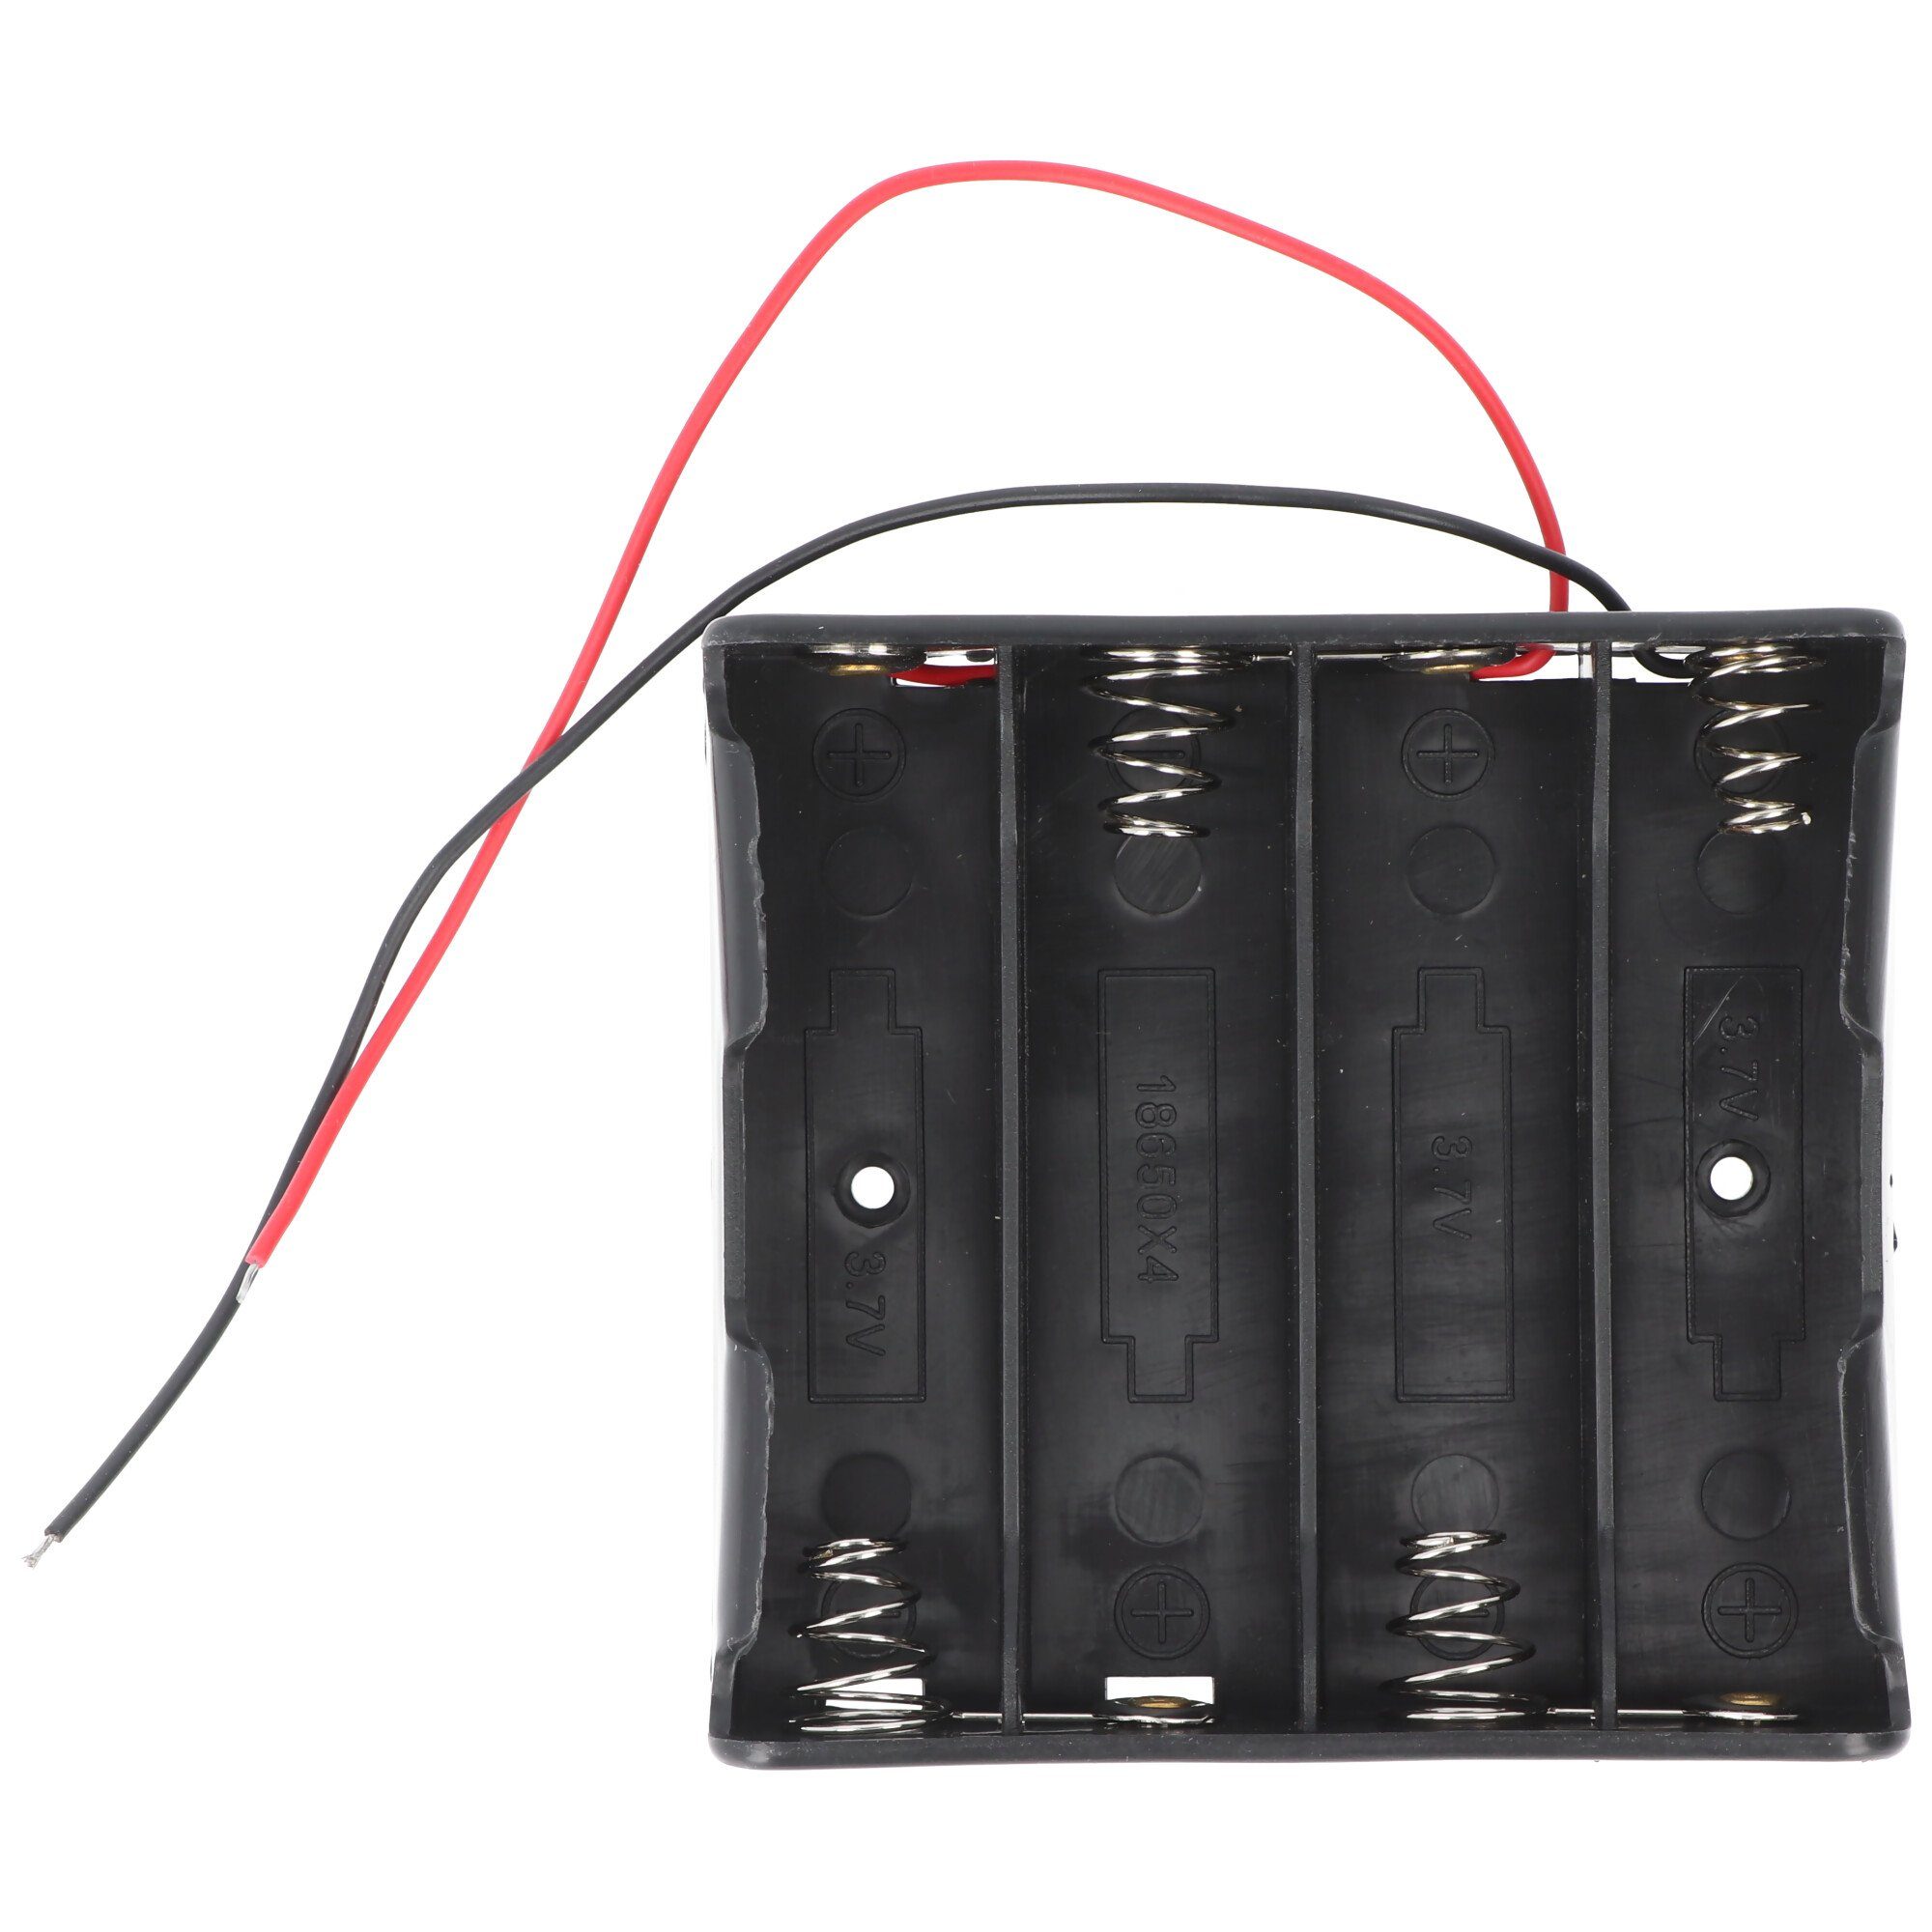 für (4S1P) Zellen Batterie EFEST Anschluss 4x Batteriehalter mit 18650